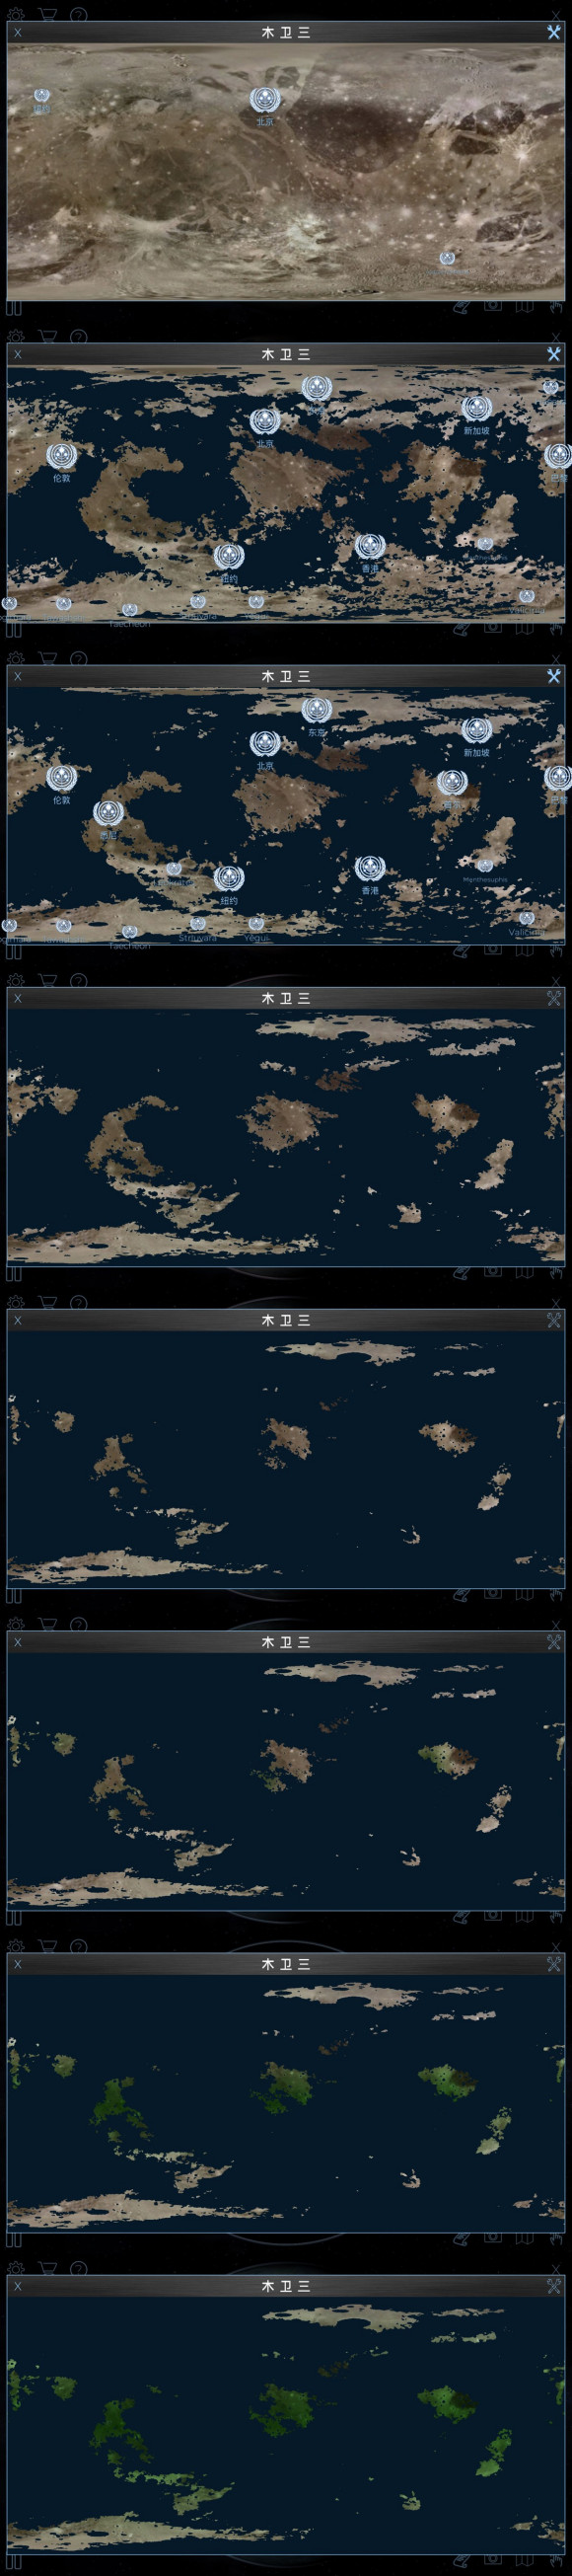 木卫三地图长图版.jpg